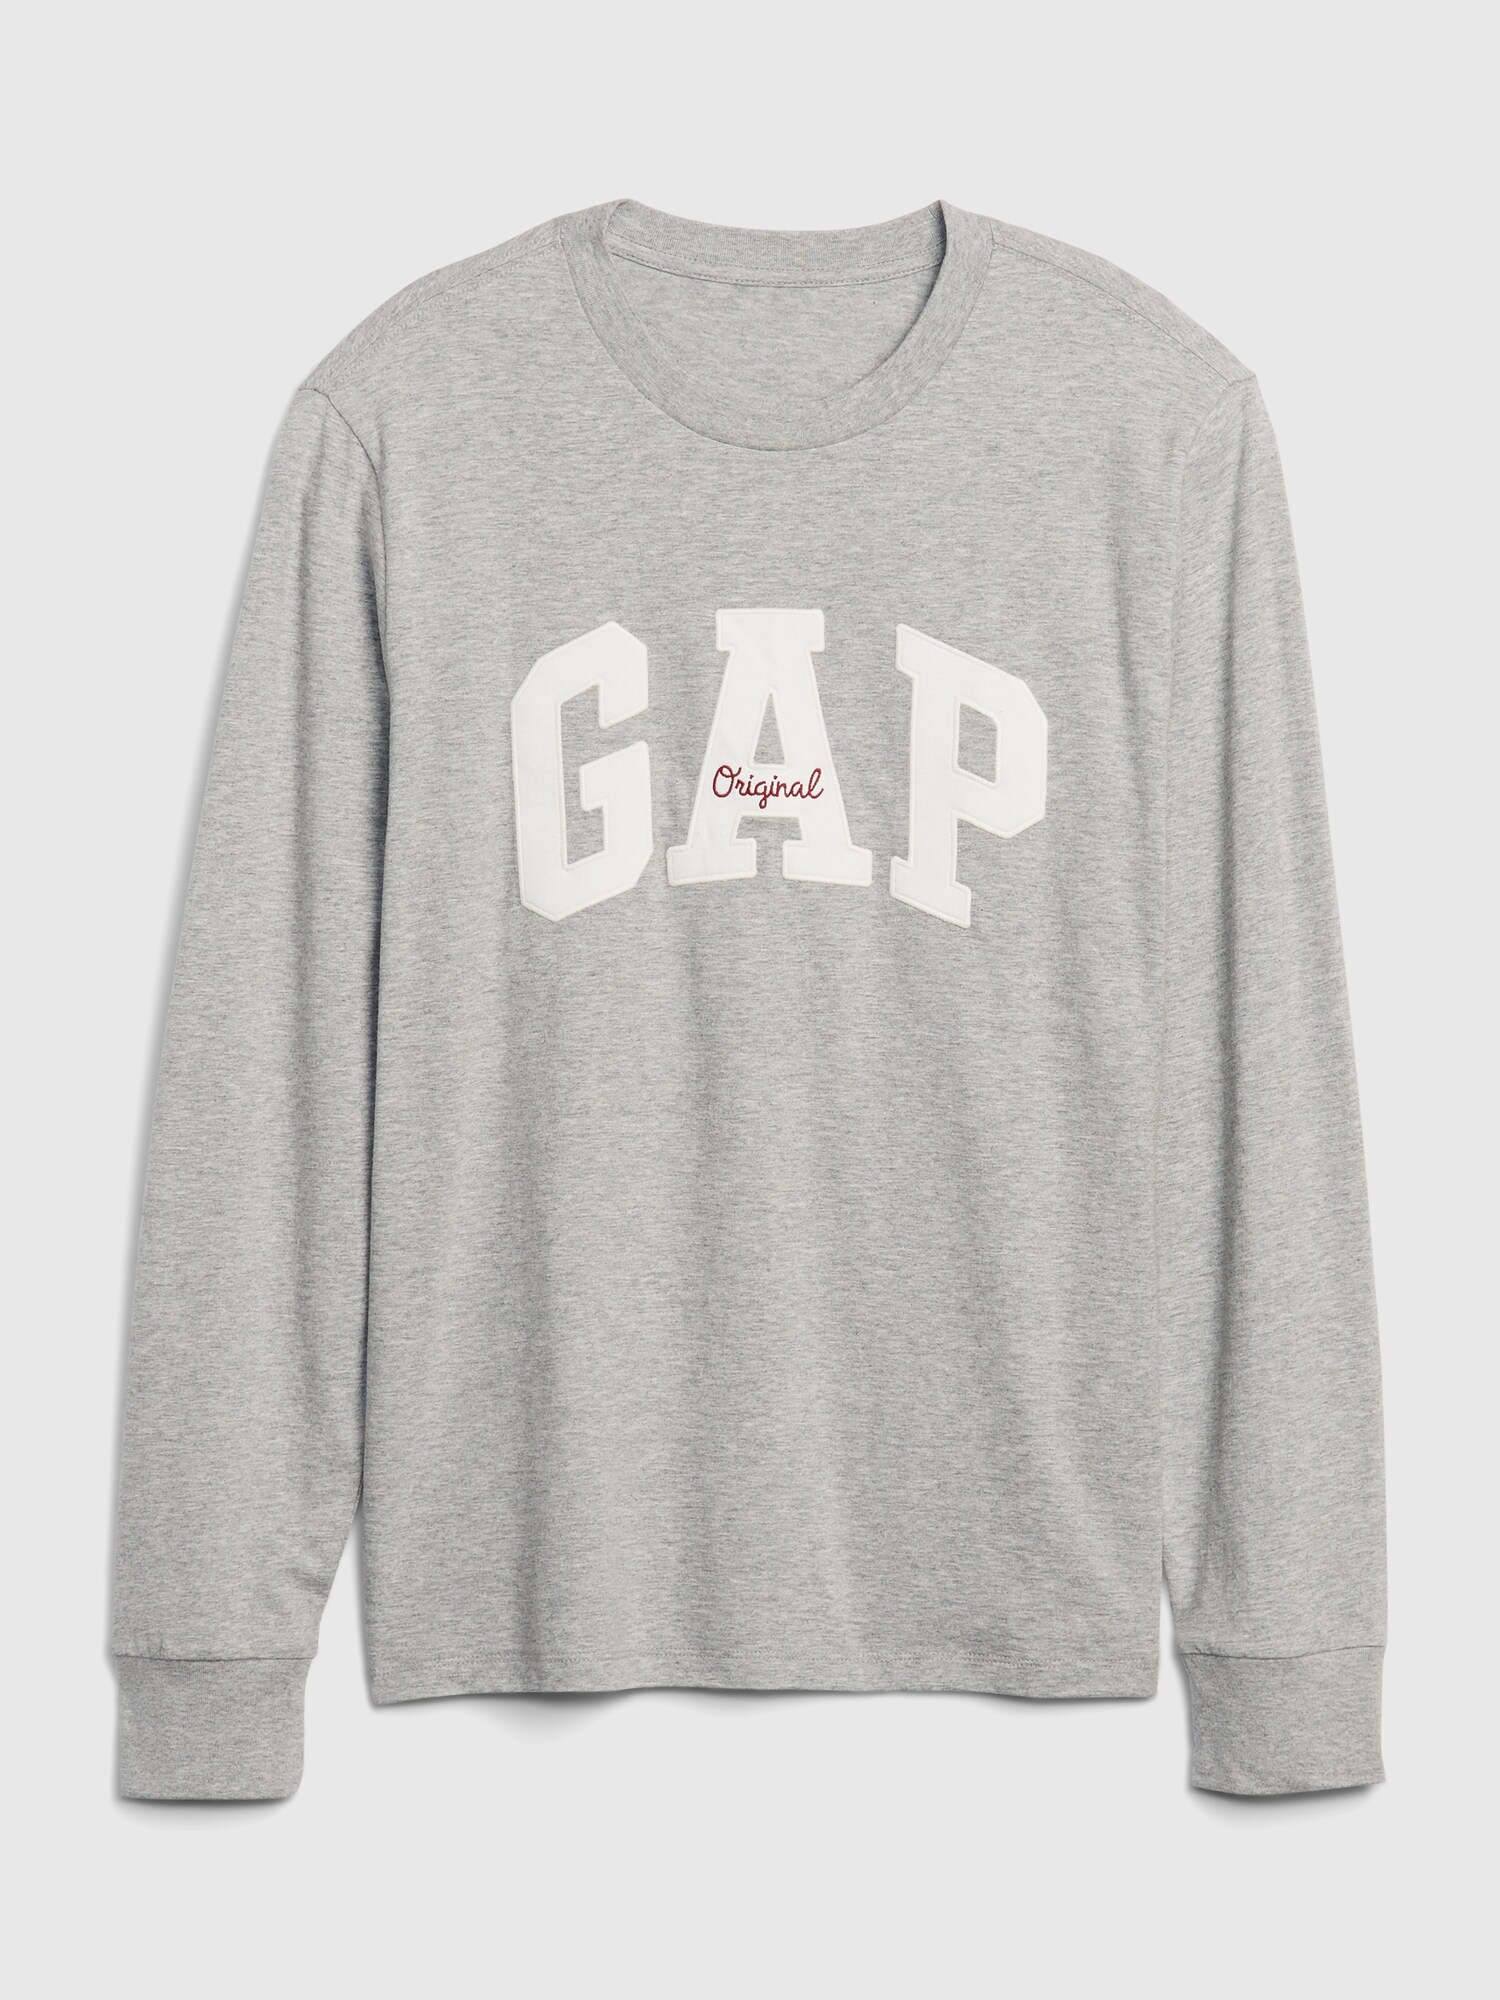 Gap Logo Uzun Kollu T-Shirt. 6